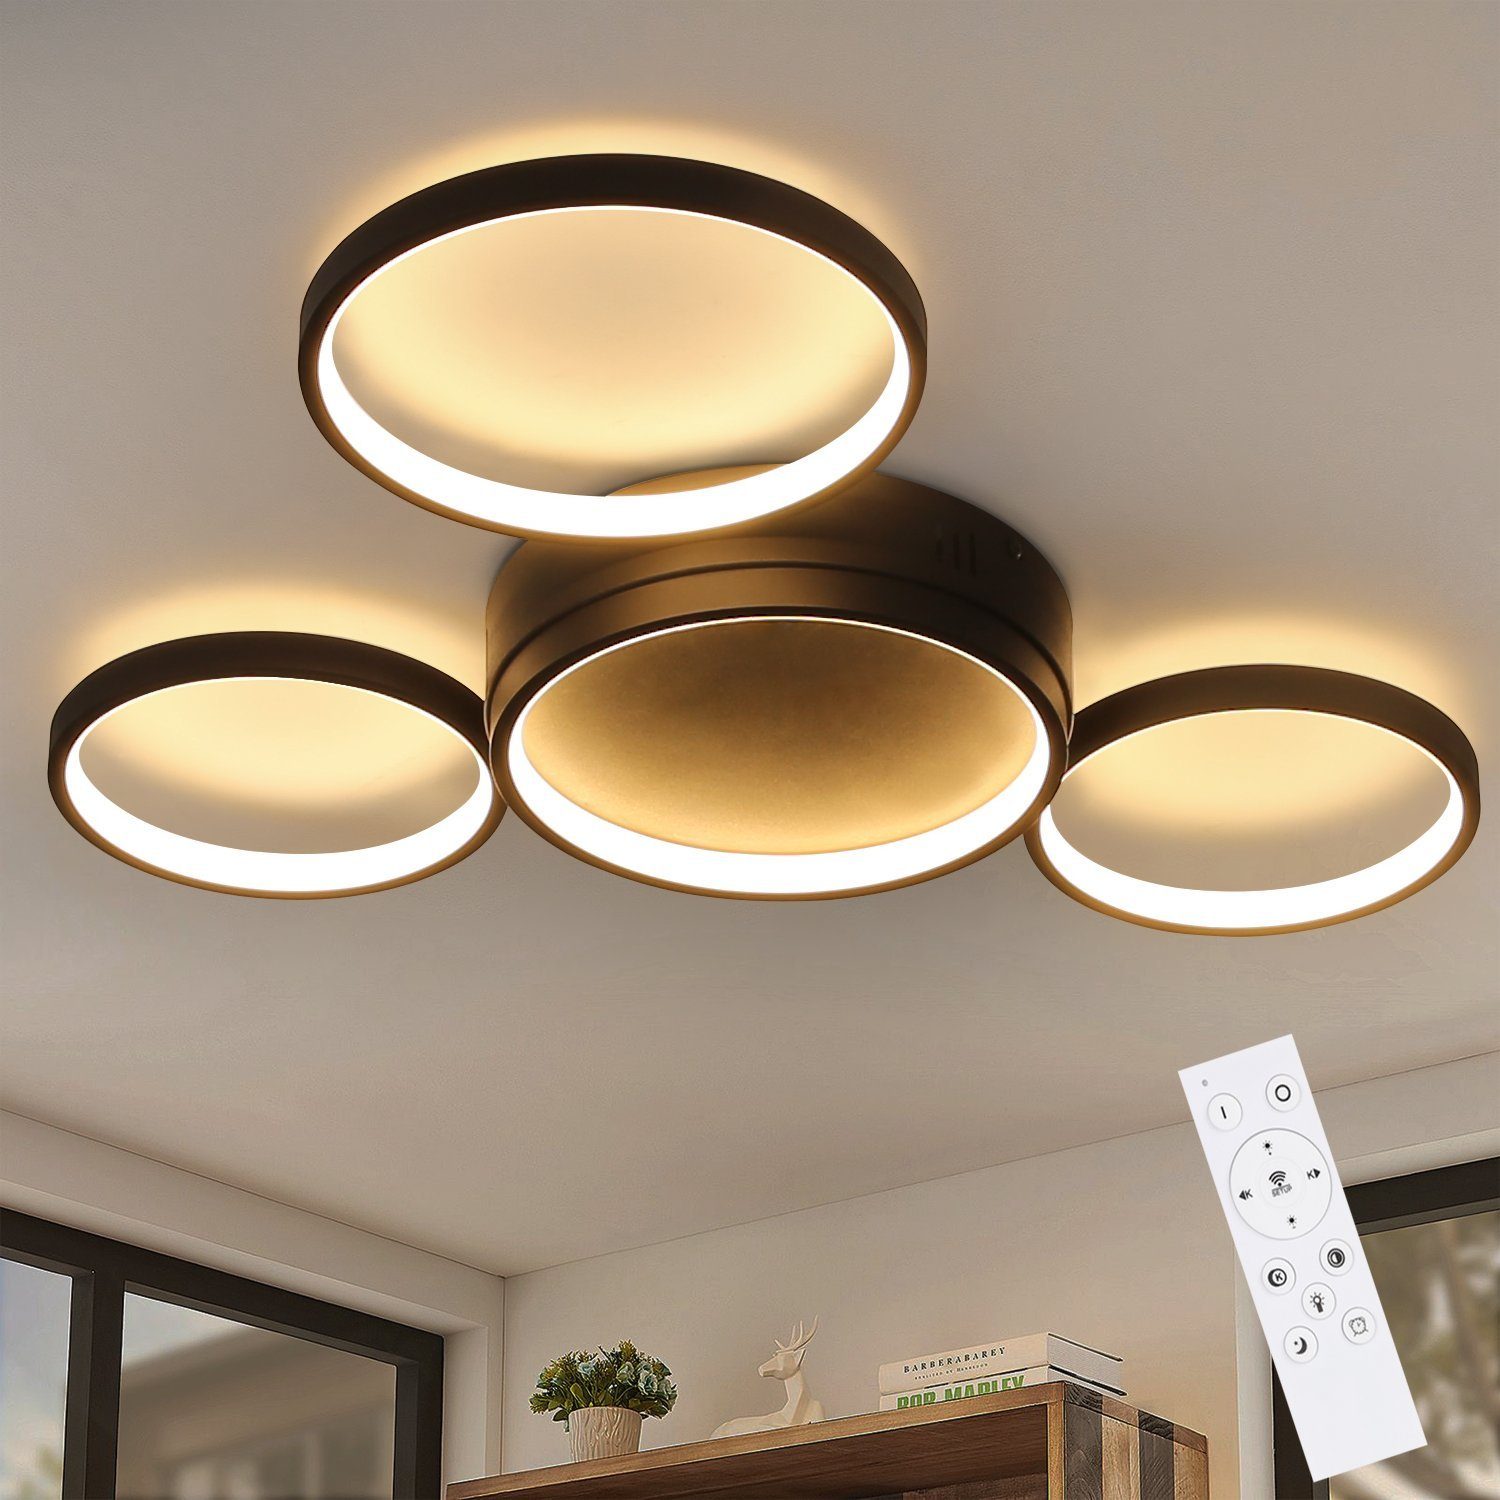 Nettlife LED Deckenleuchte Deckenlampe mit 4 Metall Ringe Dimmbar mit Fernbedienung, LED fest integriert, Warmweiß, Neutralweiß, Kaltweiß, für Wohnzimmer Küche Schlafzimmer Schwarz